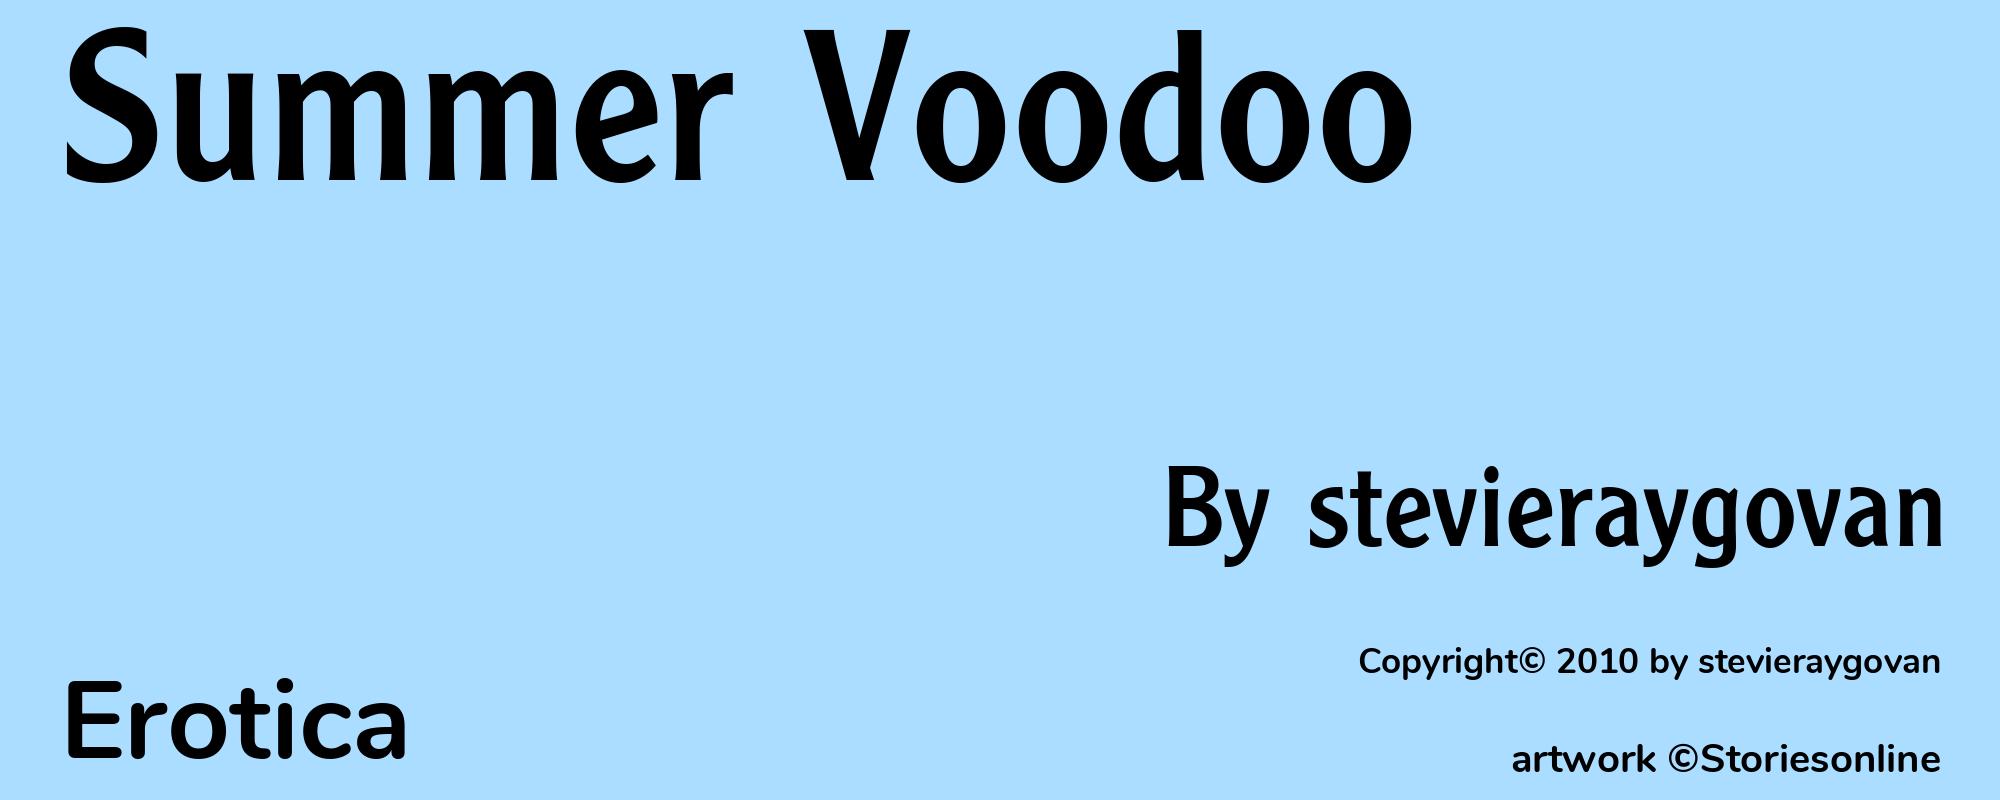 Summer Voodoo - Cover